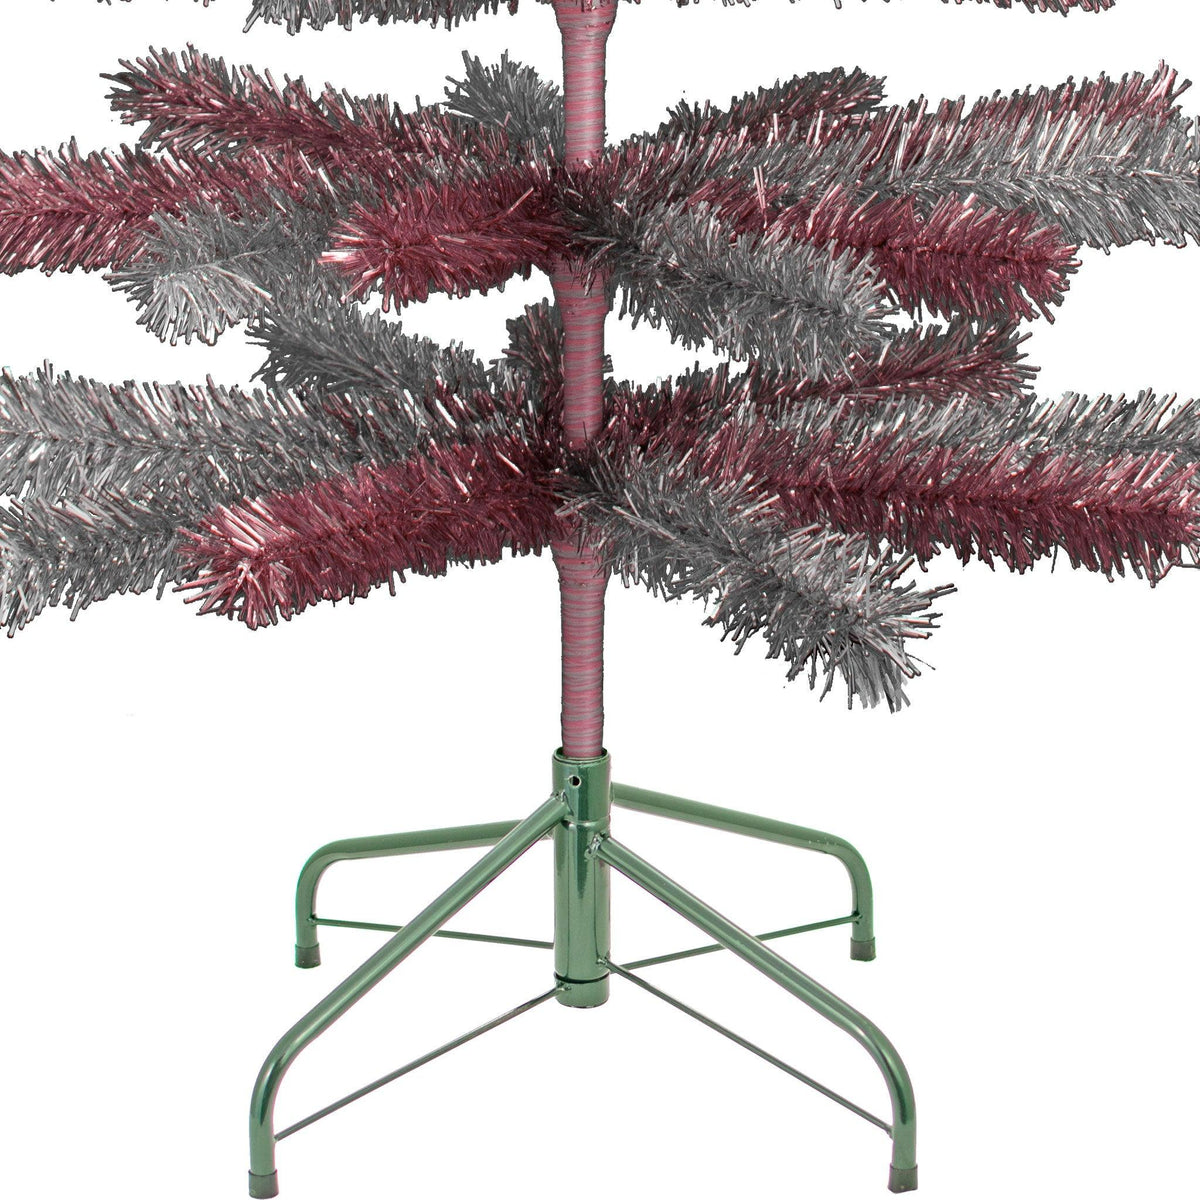 Pink & Silver Mixed Tinsel Christmas Tree - Lee Display